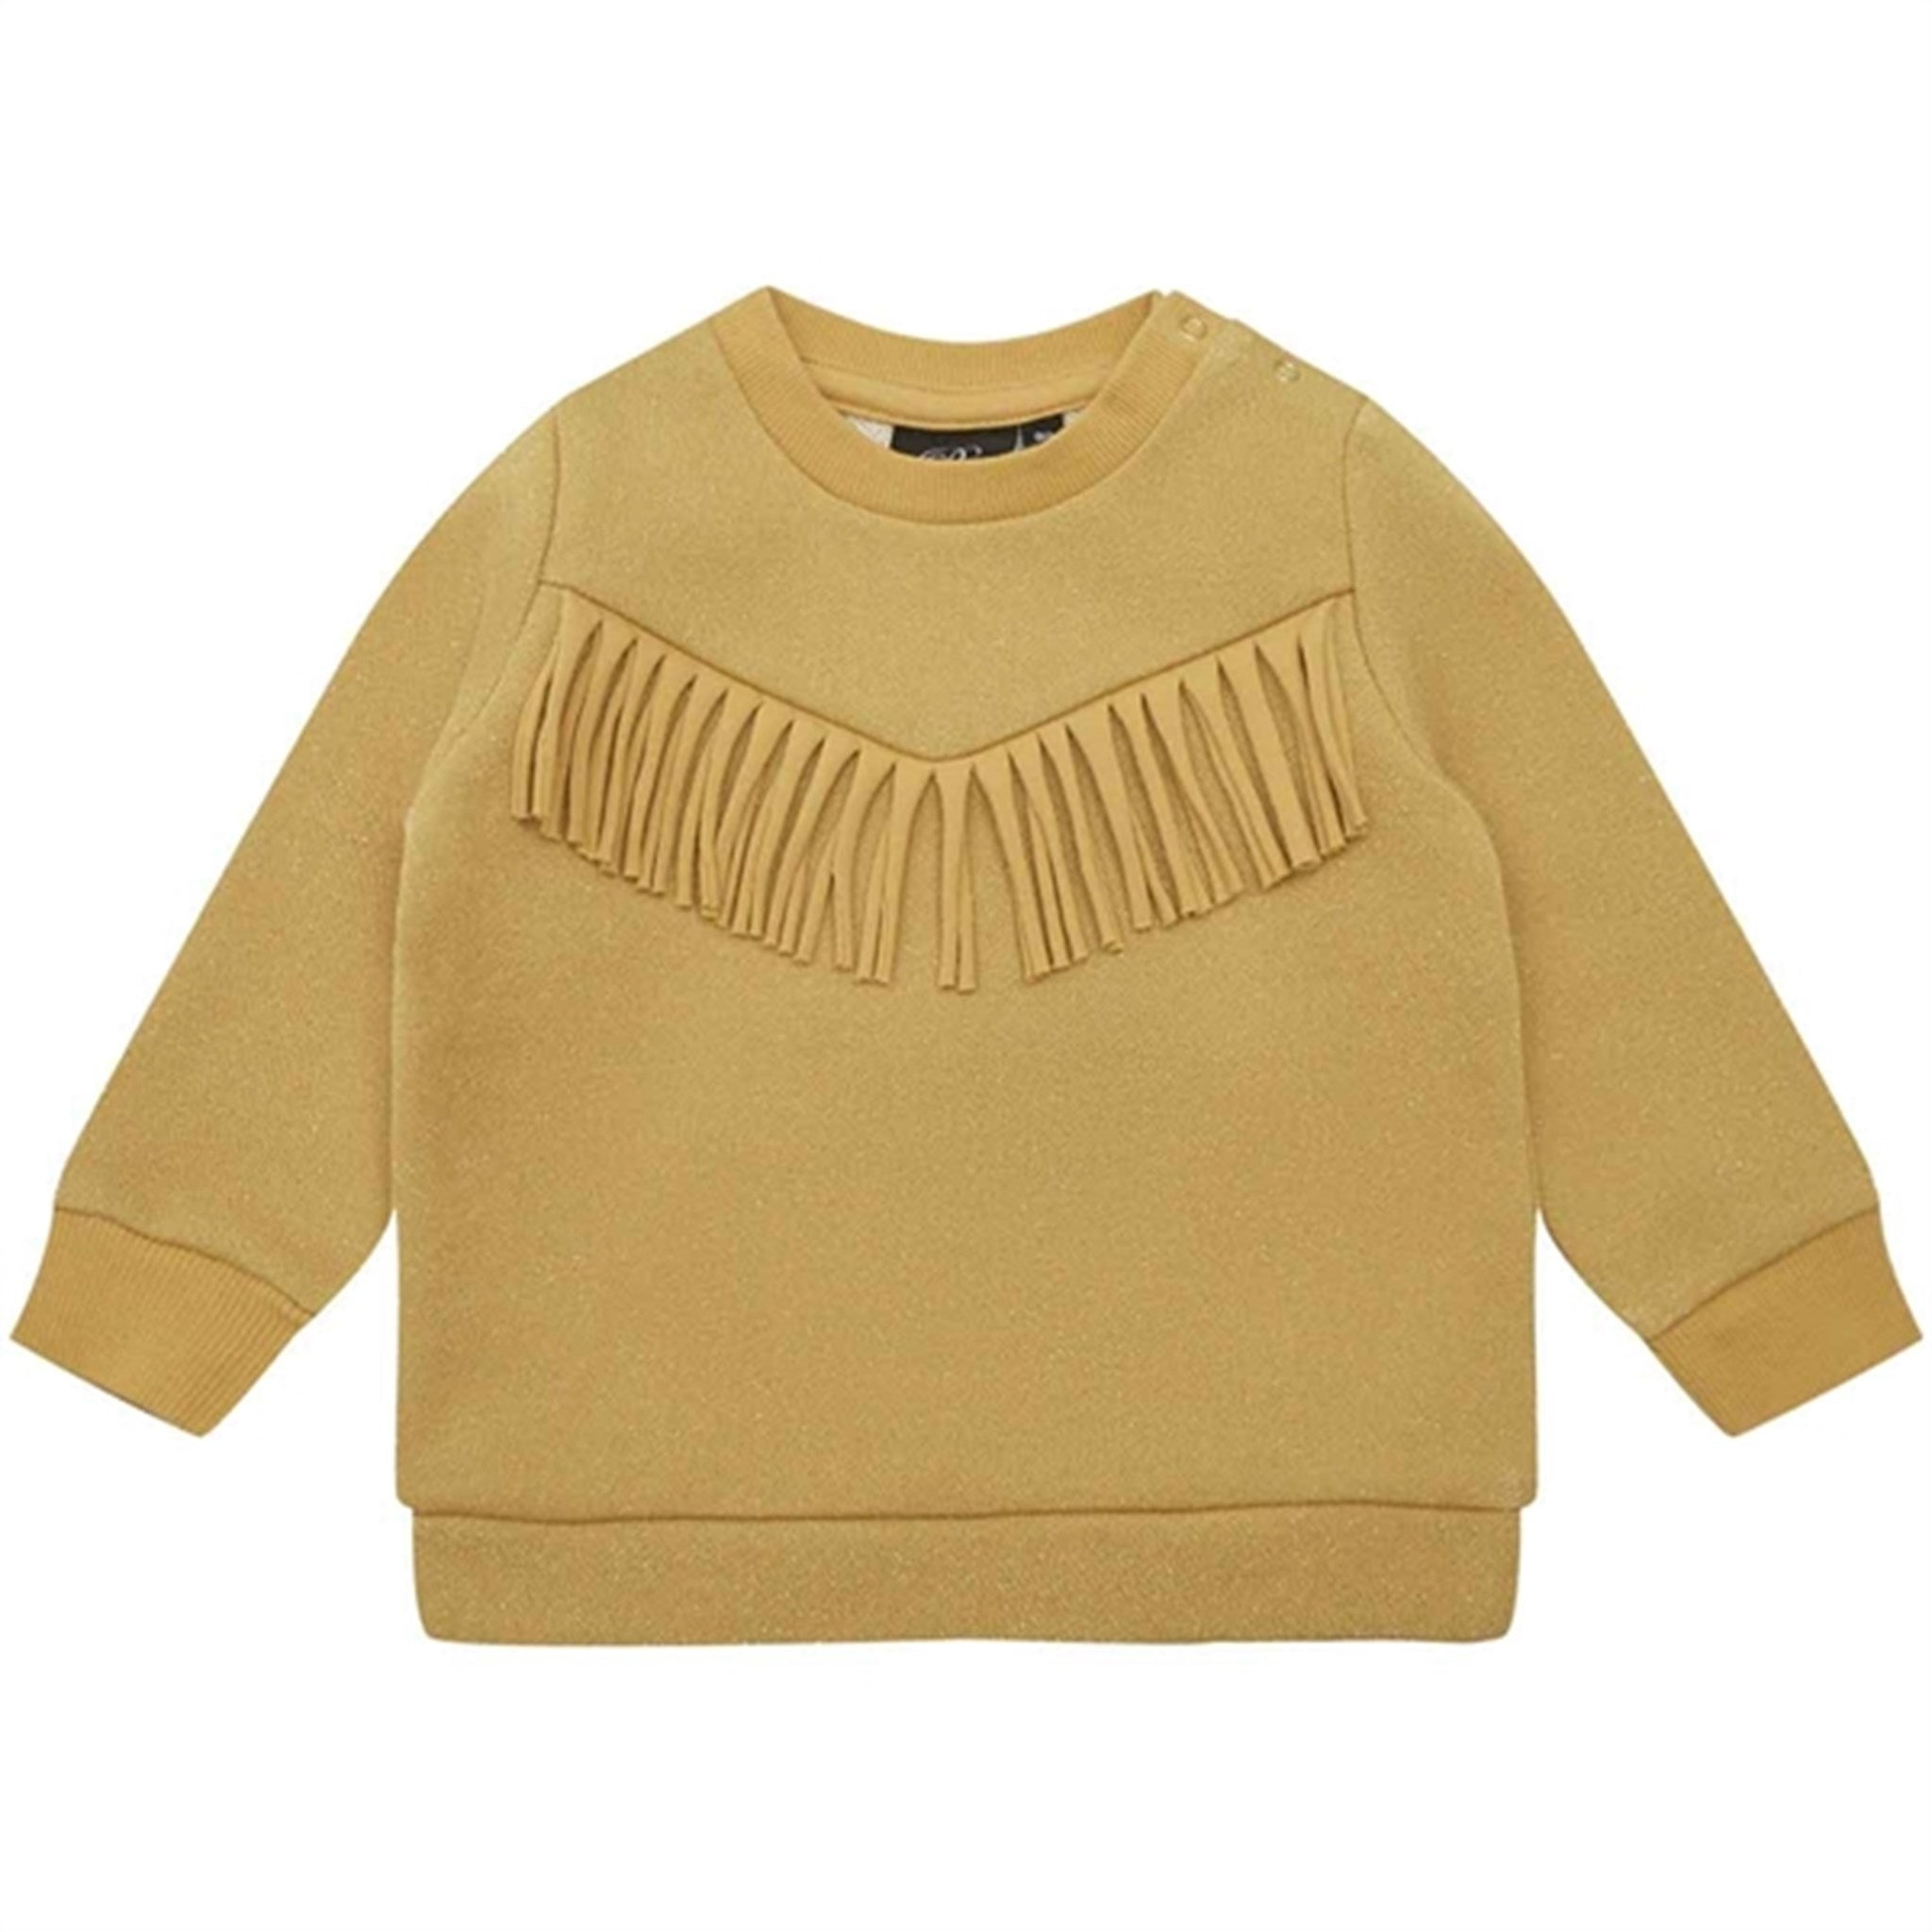 Sofie Schnoor Yellow Sweatshirt 6